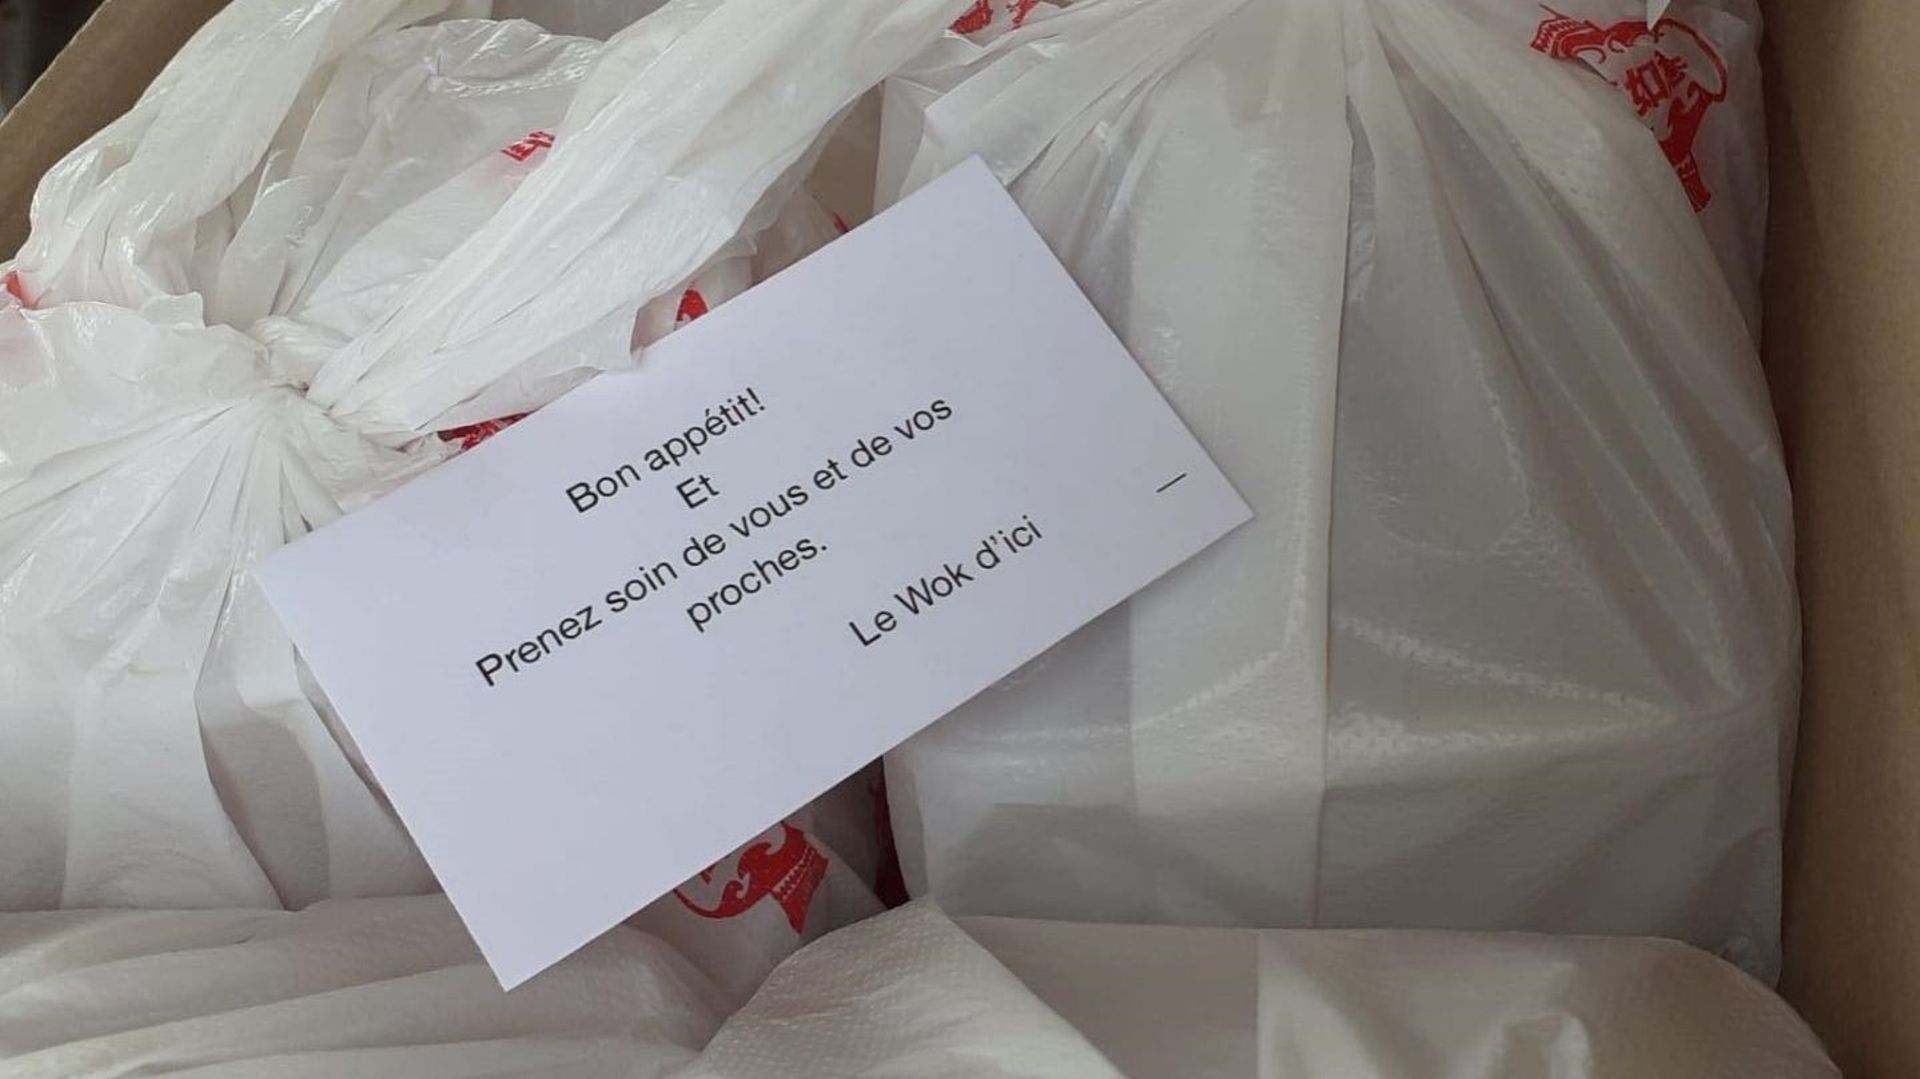 Un donateur anonyme offre 200 repas aux bénéficiaires du CPAS de Jodoigne